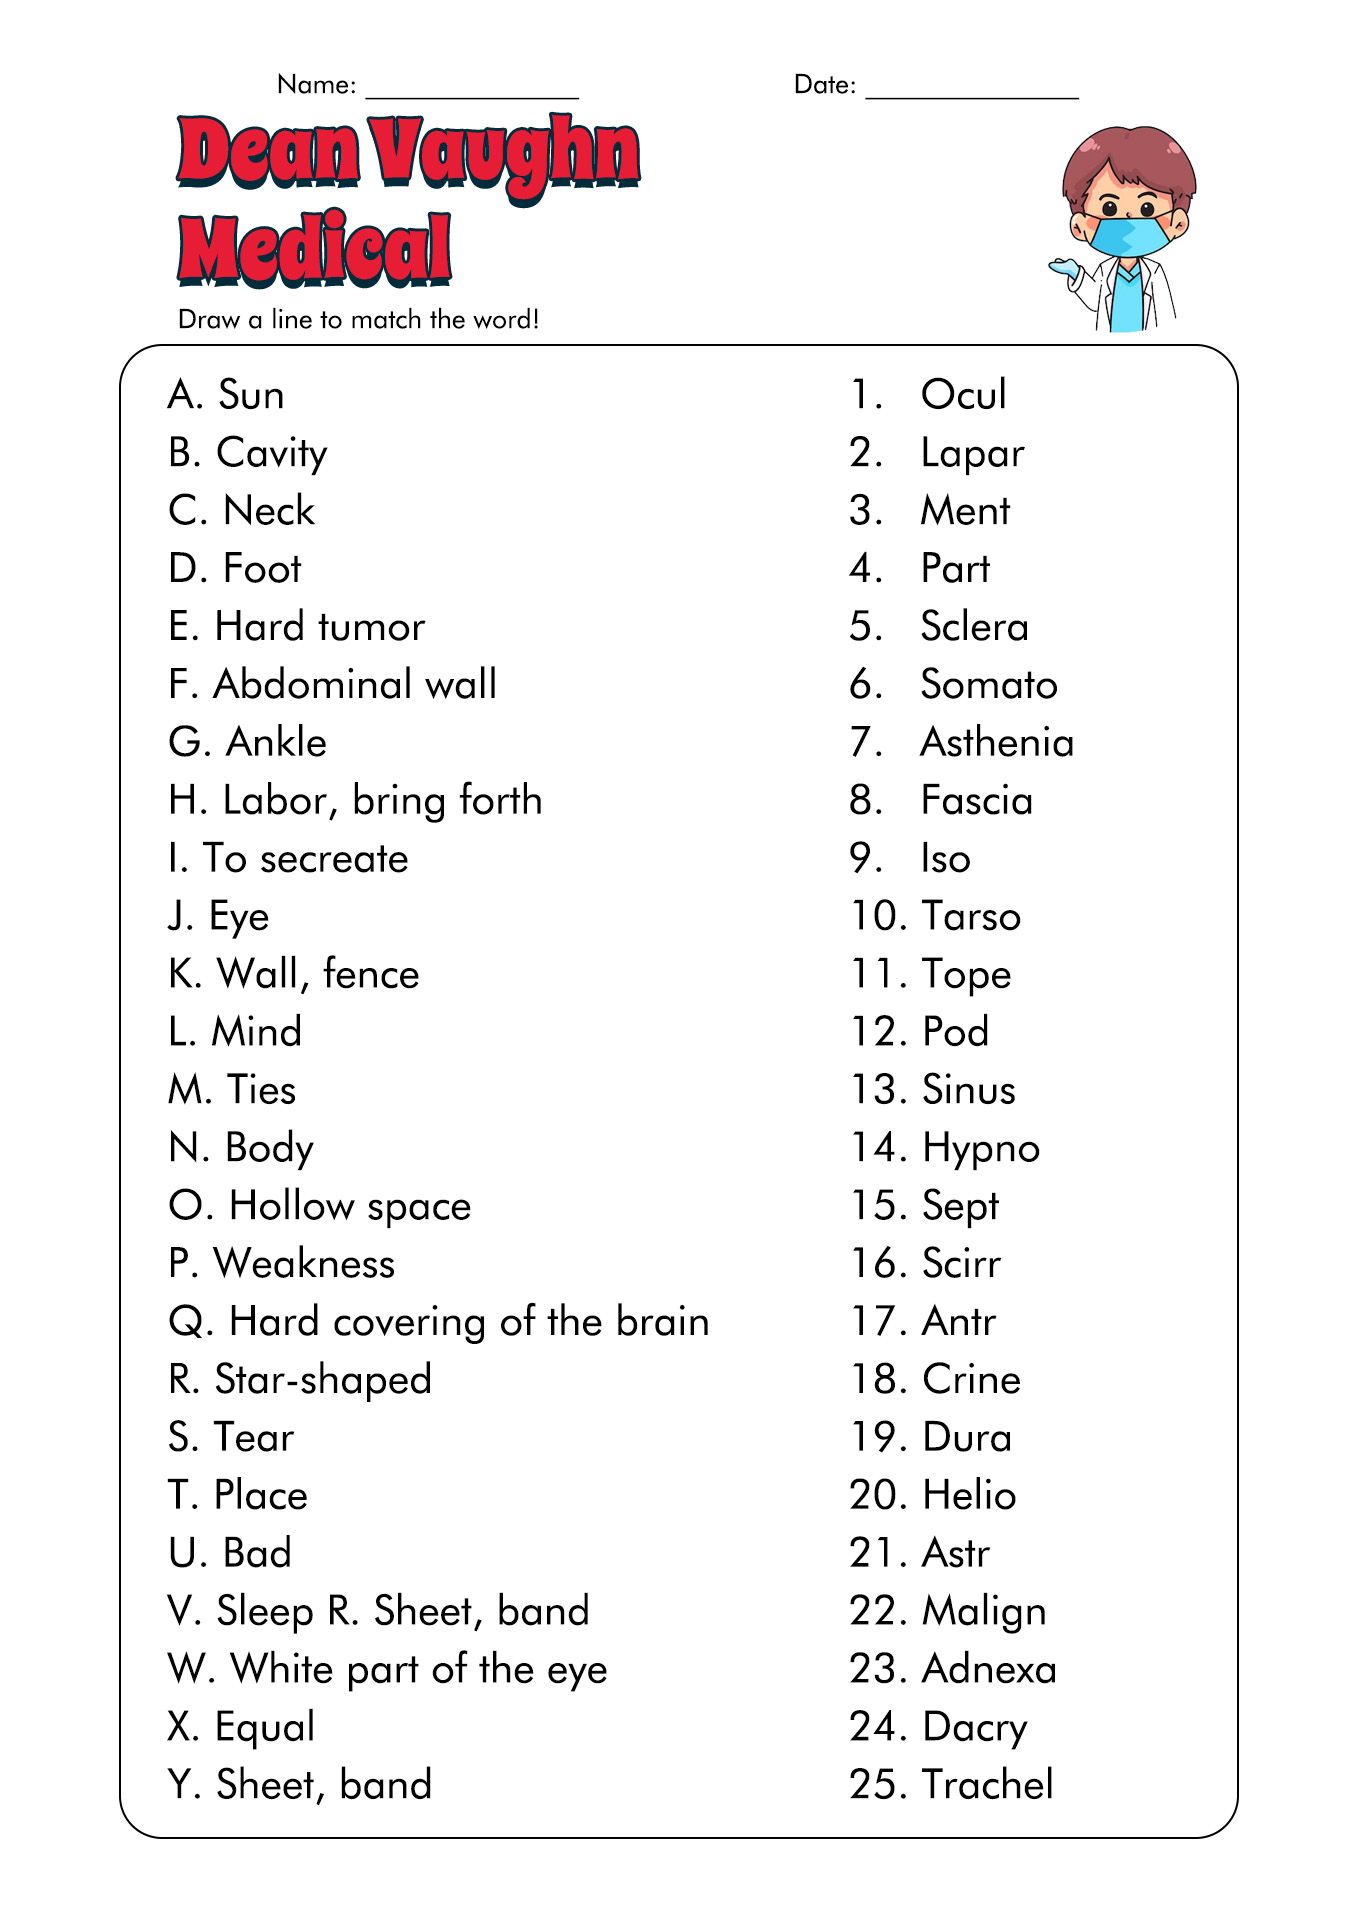 Biology Root Words Worksheet